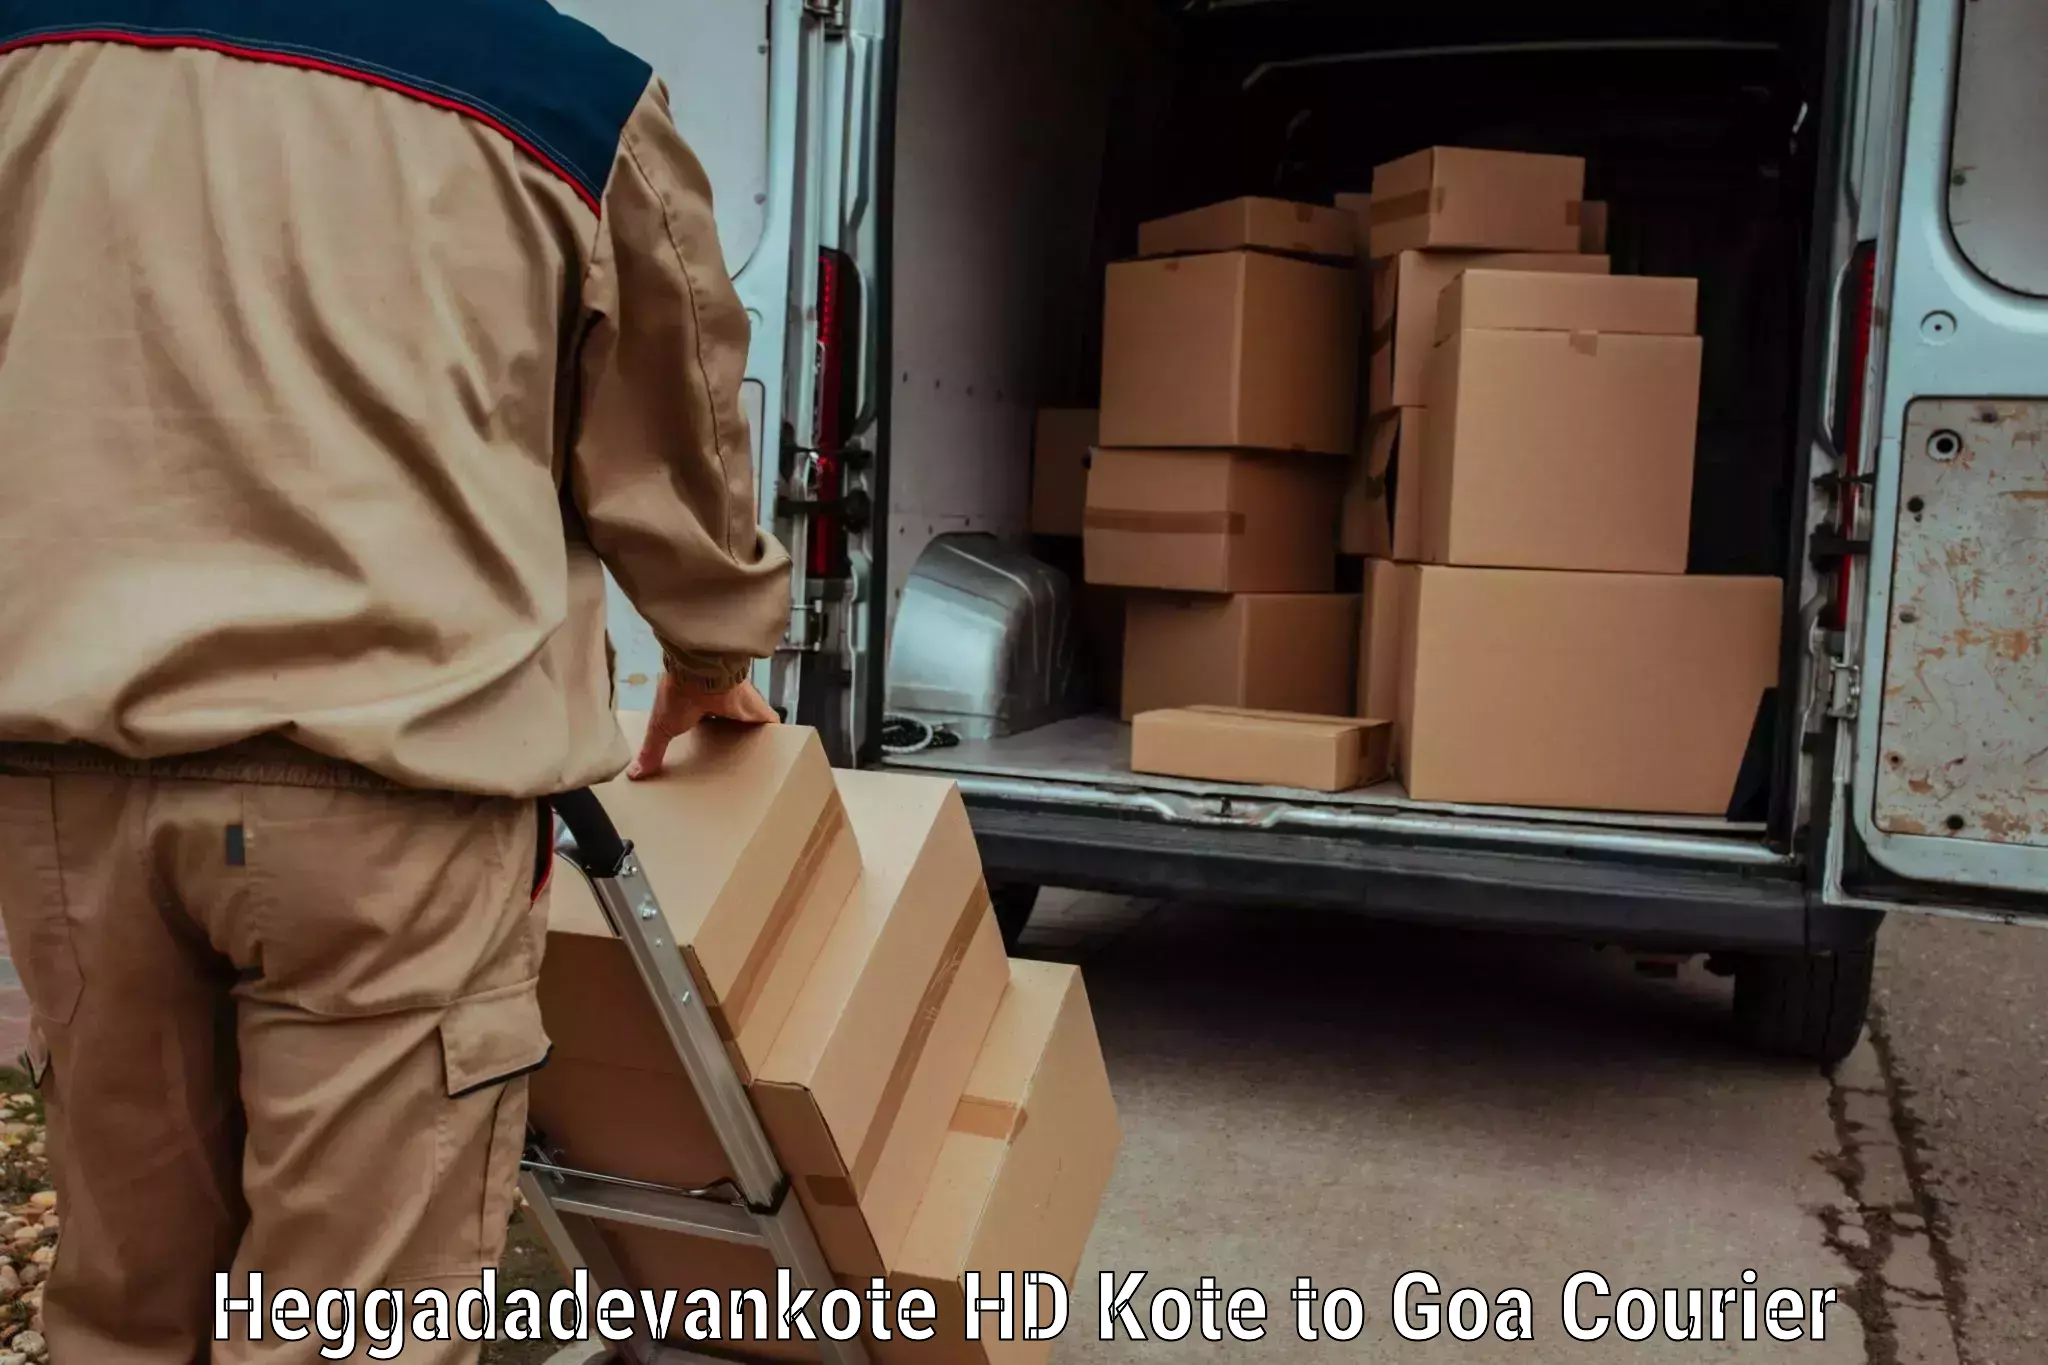 Domestic courier Heggadadevankote HD Kote to Goa